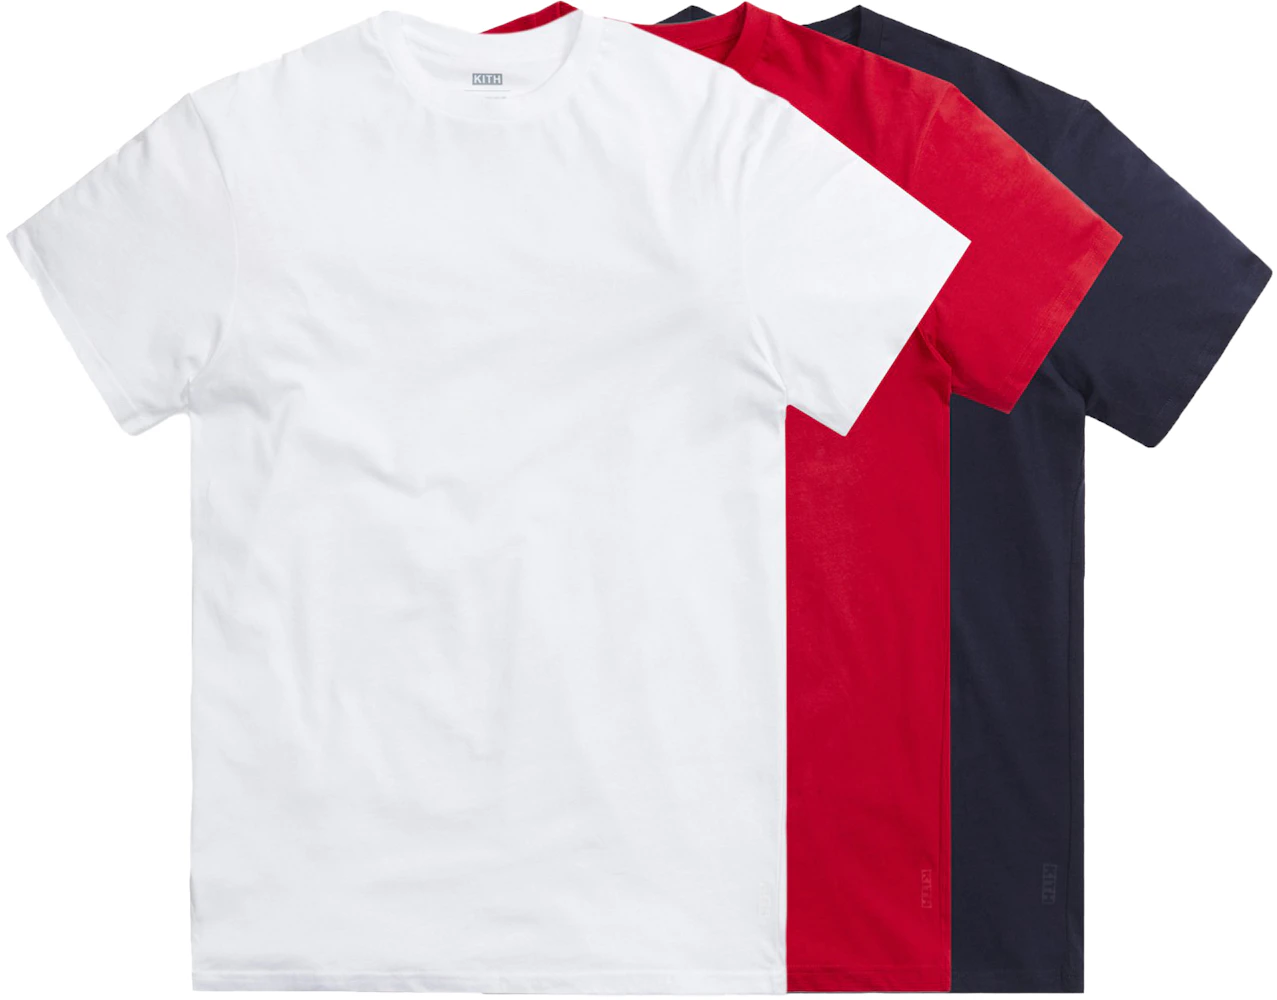 Kith for Team USA Undershirt (3-Pack) White/Crimson Red/Obsidian Navy ...